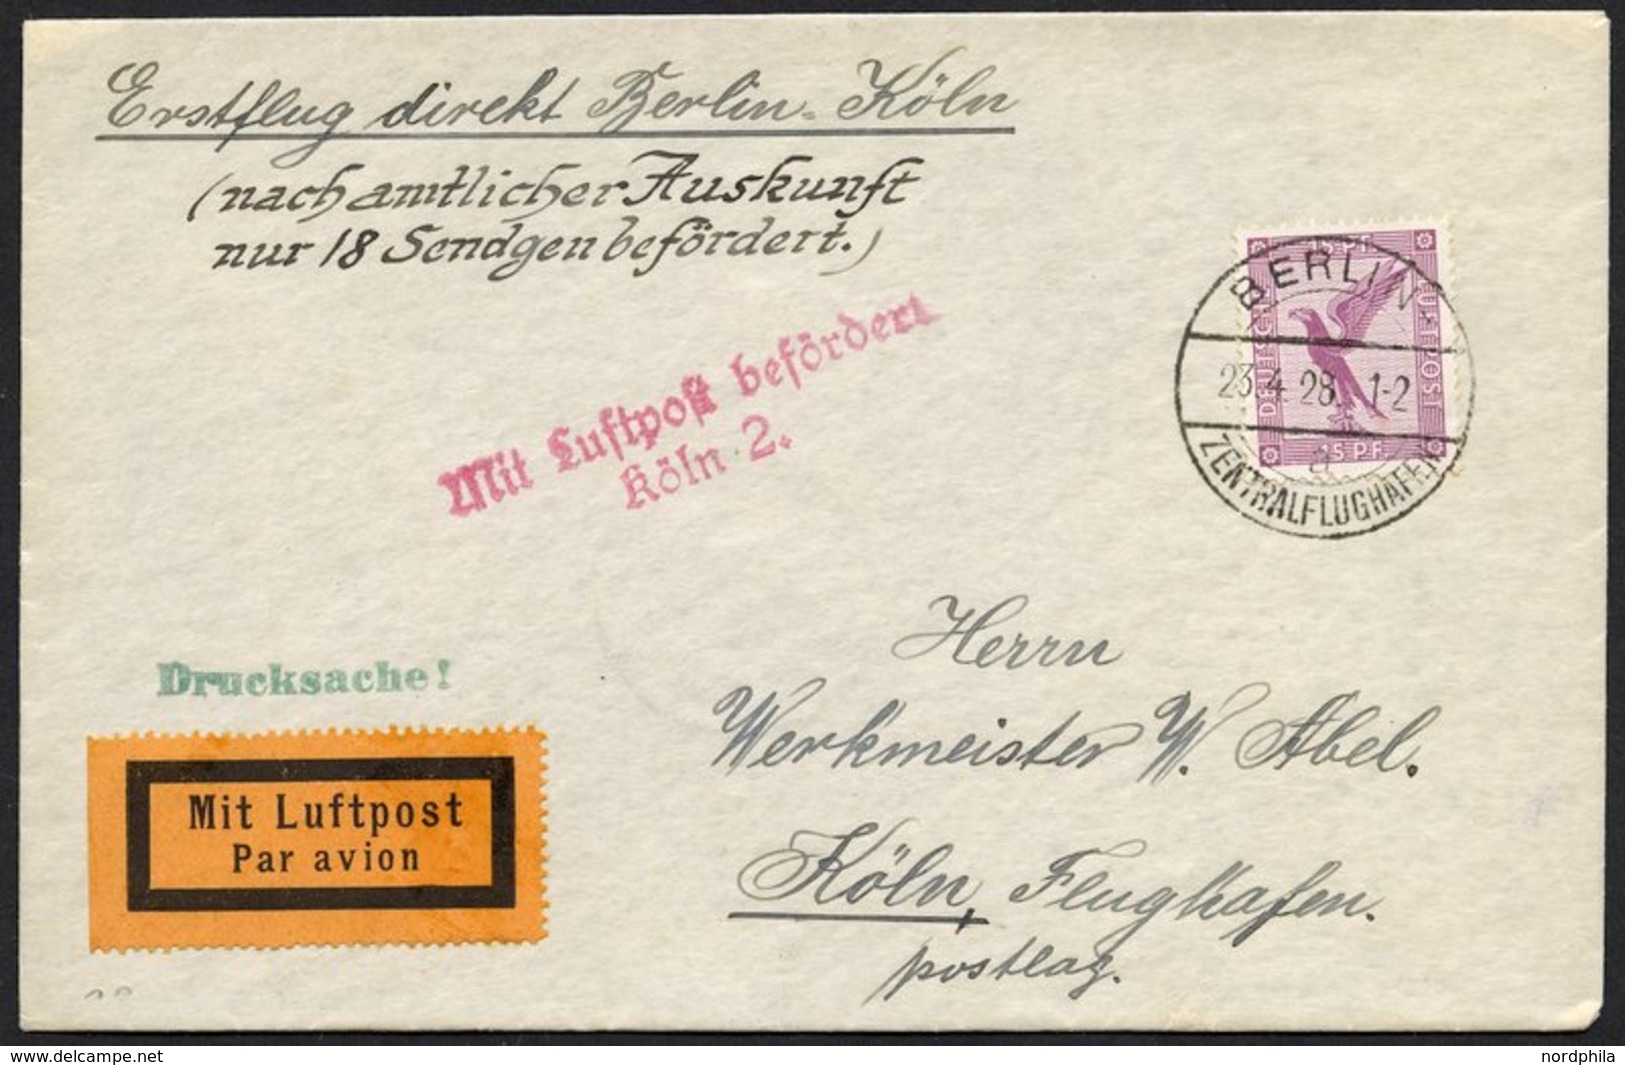 ERST-UND ERÖFFNUNGSFLÜGE 28.11.01 BRIEF, 23.4.1928, Berlin-Köln, Prachtbrief, R! - Zeppelin